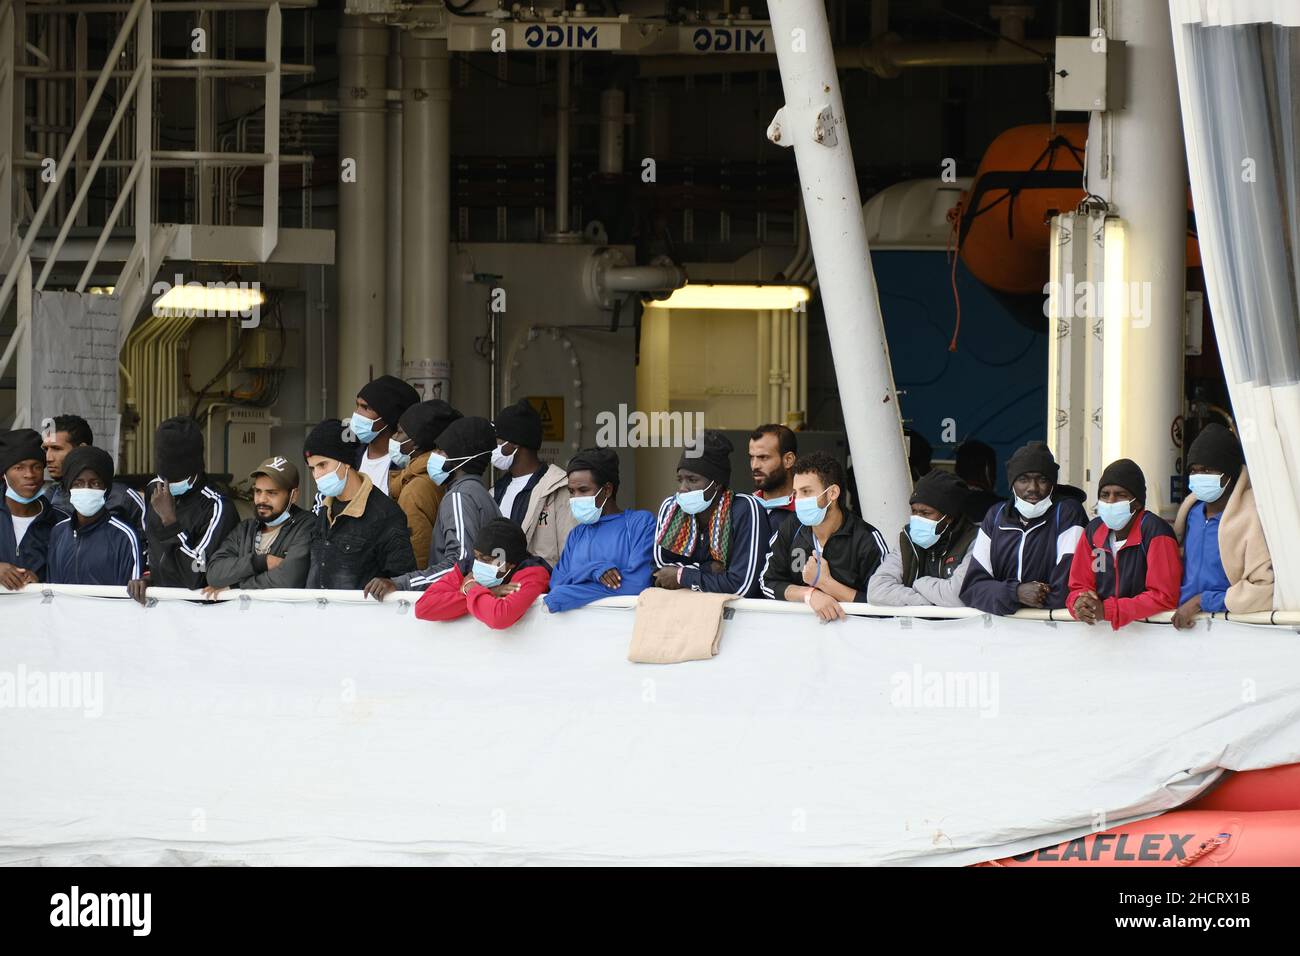 Augusta, Sicile, Italie, 29 décembre le navire de secours humanitaire Geo Barents de MSF débarque à Augusta avec 558 migrants à bord le 2021.le navire est parti le 15 décembre et a effectué huit sauvetages, ont déclaré des médecins sans frontières. Banque D'Images